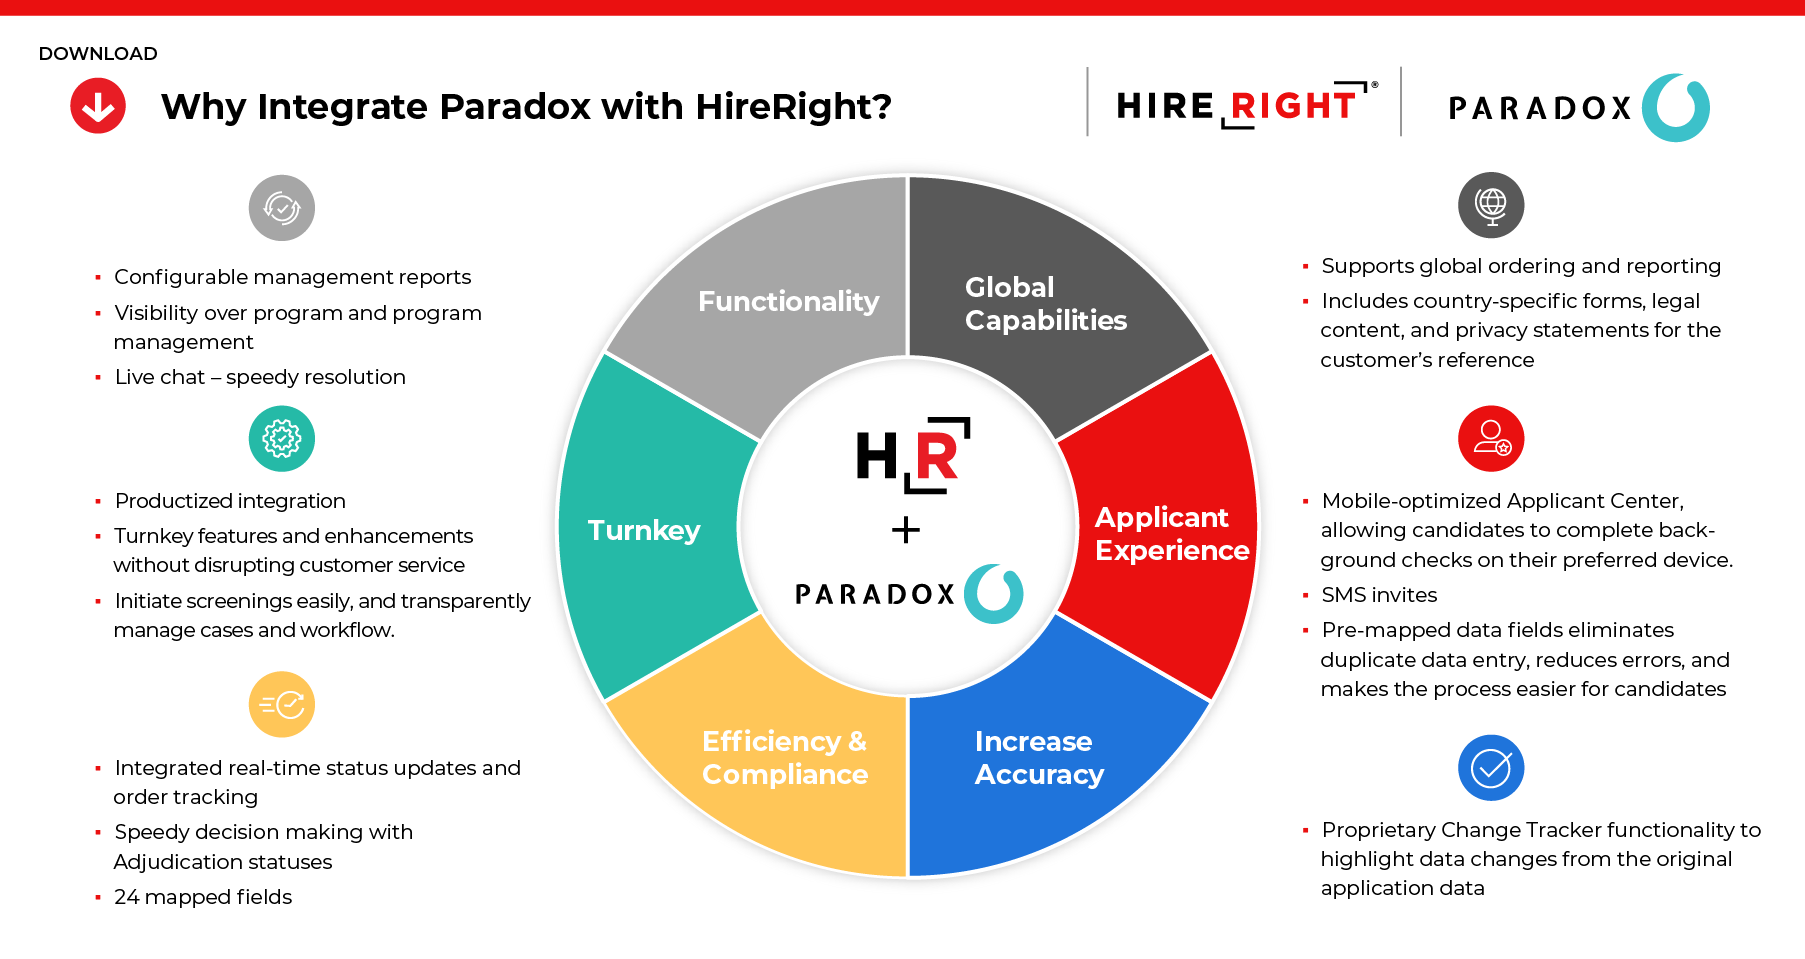 HireRight + Paradox